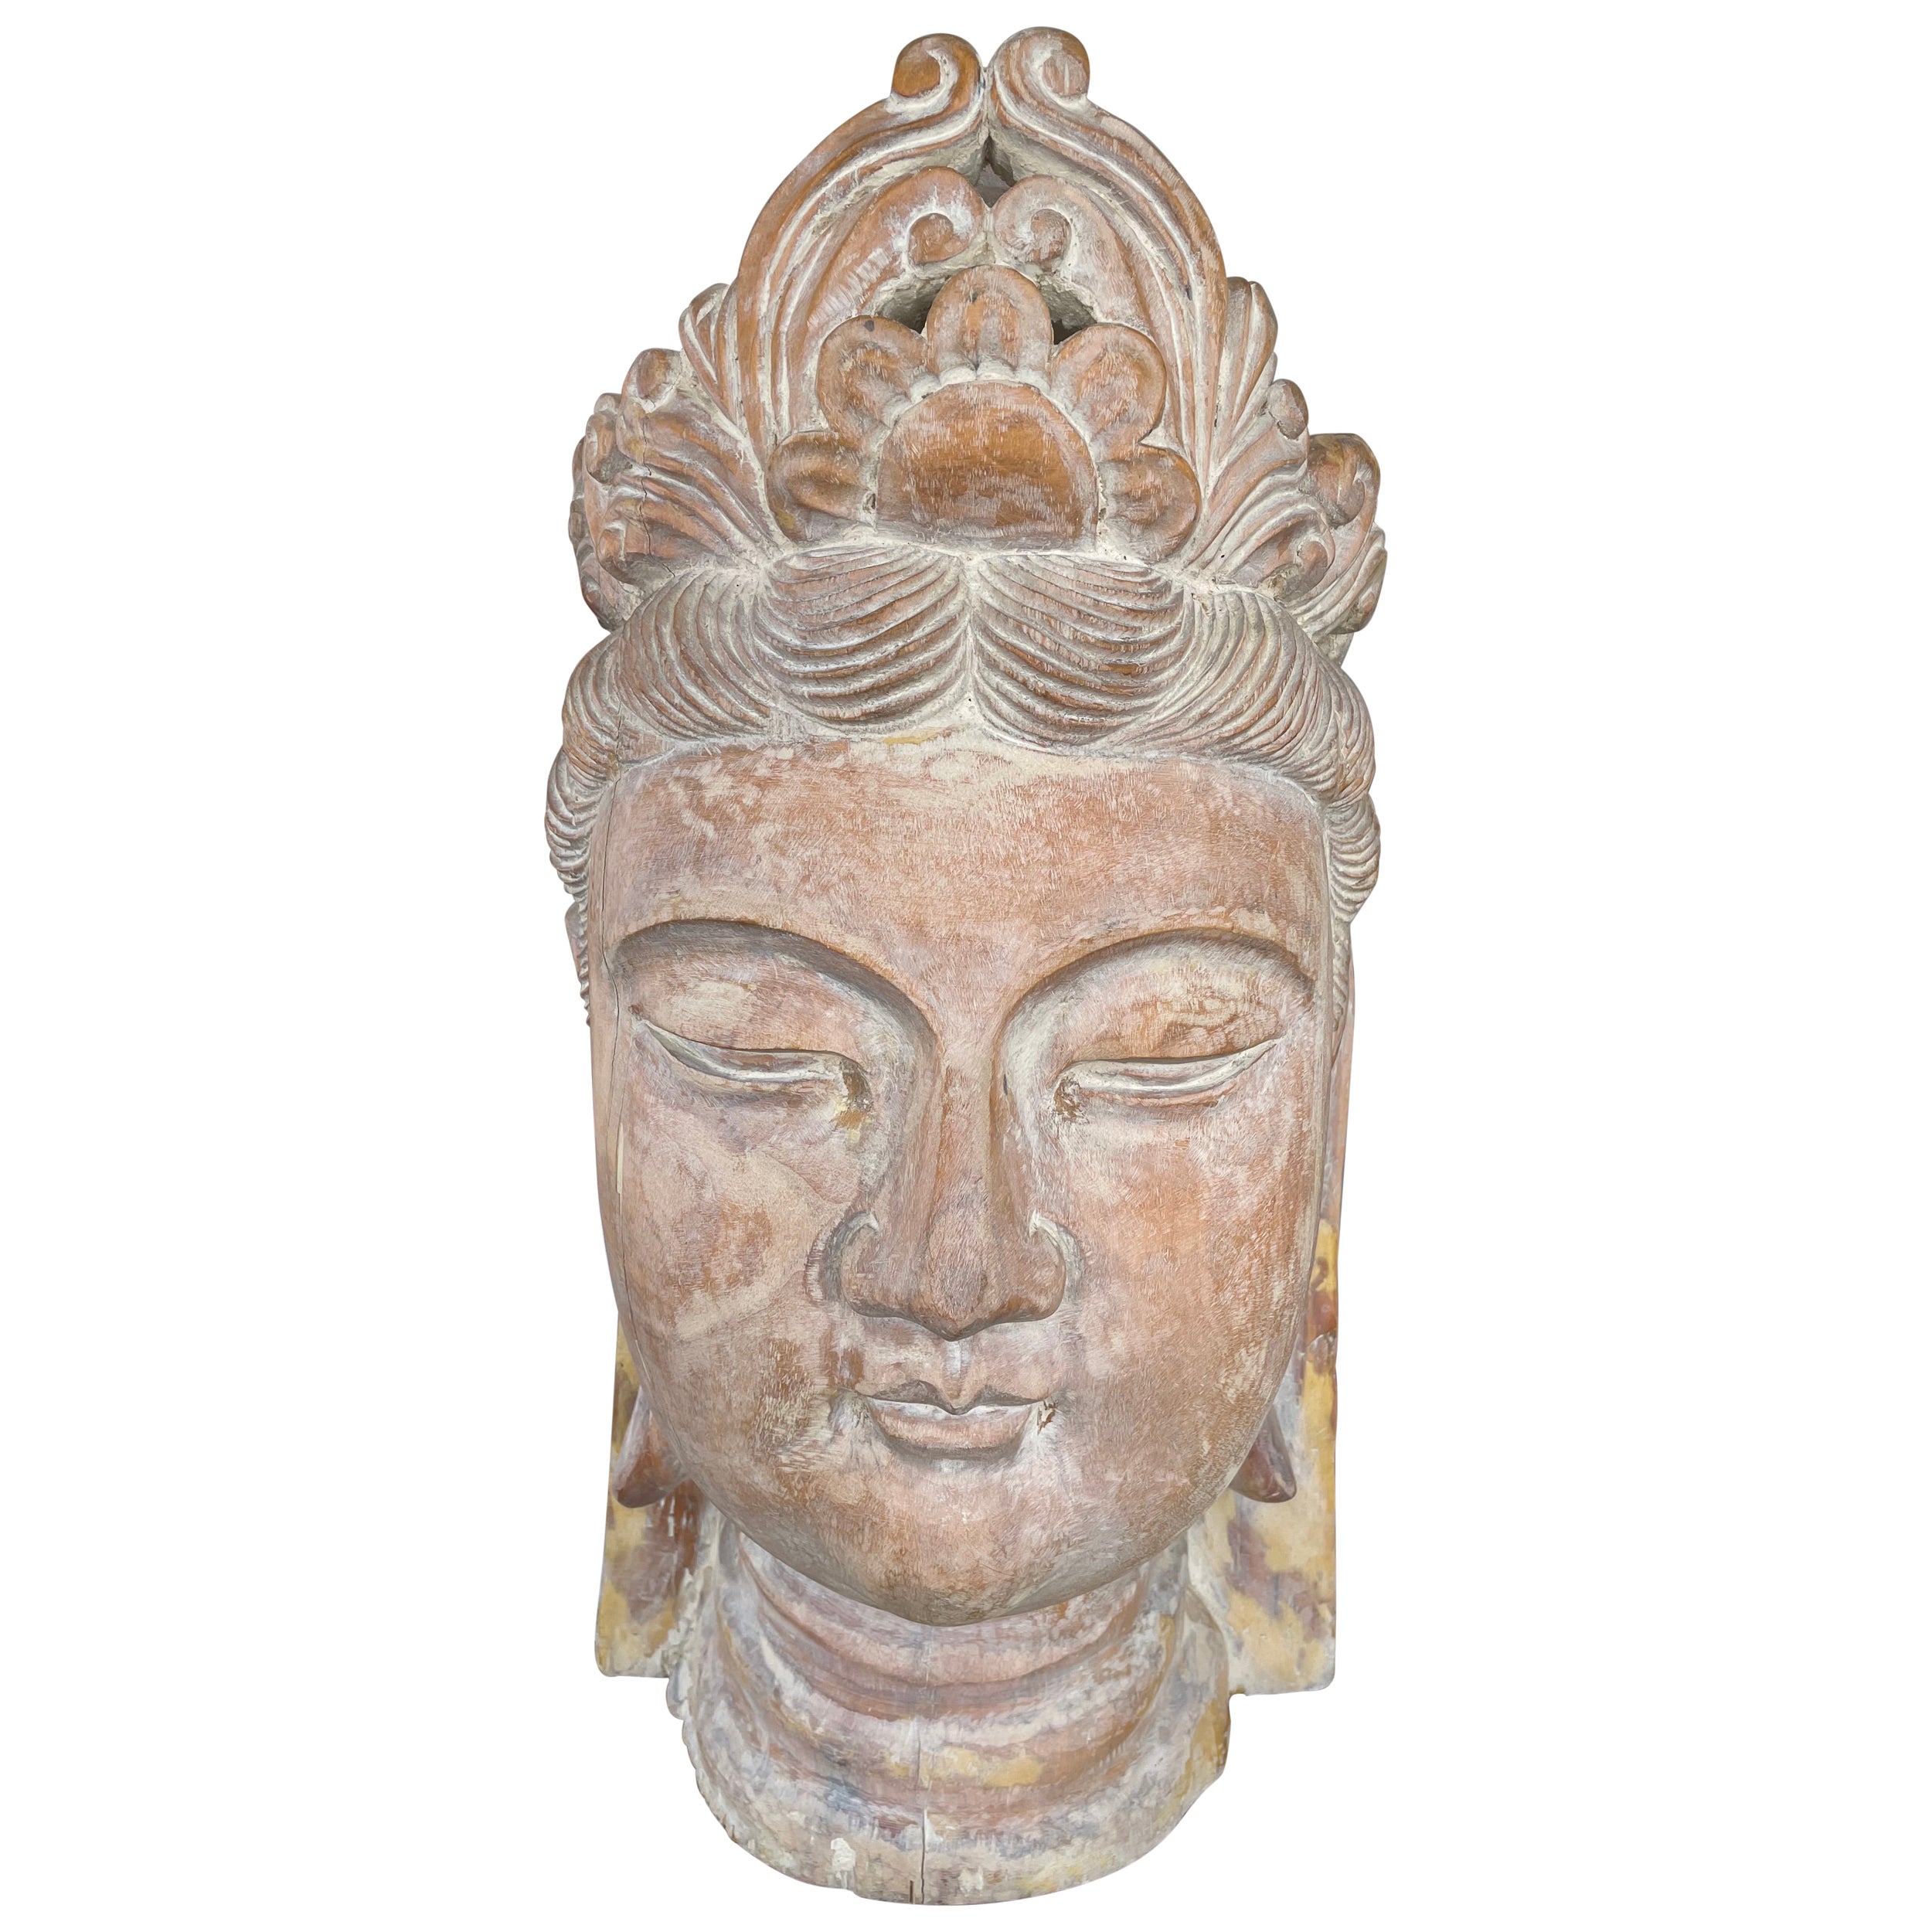 Kunsthandwerklich geschnitzter Buddha-Kopf aus Wood Wood